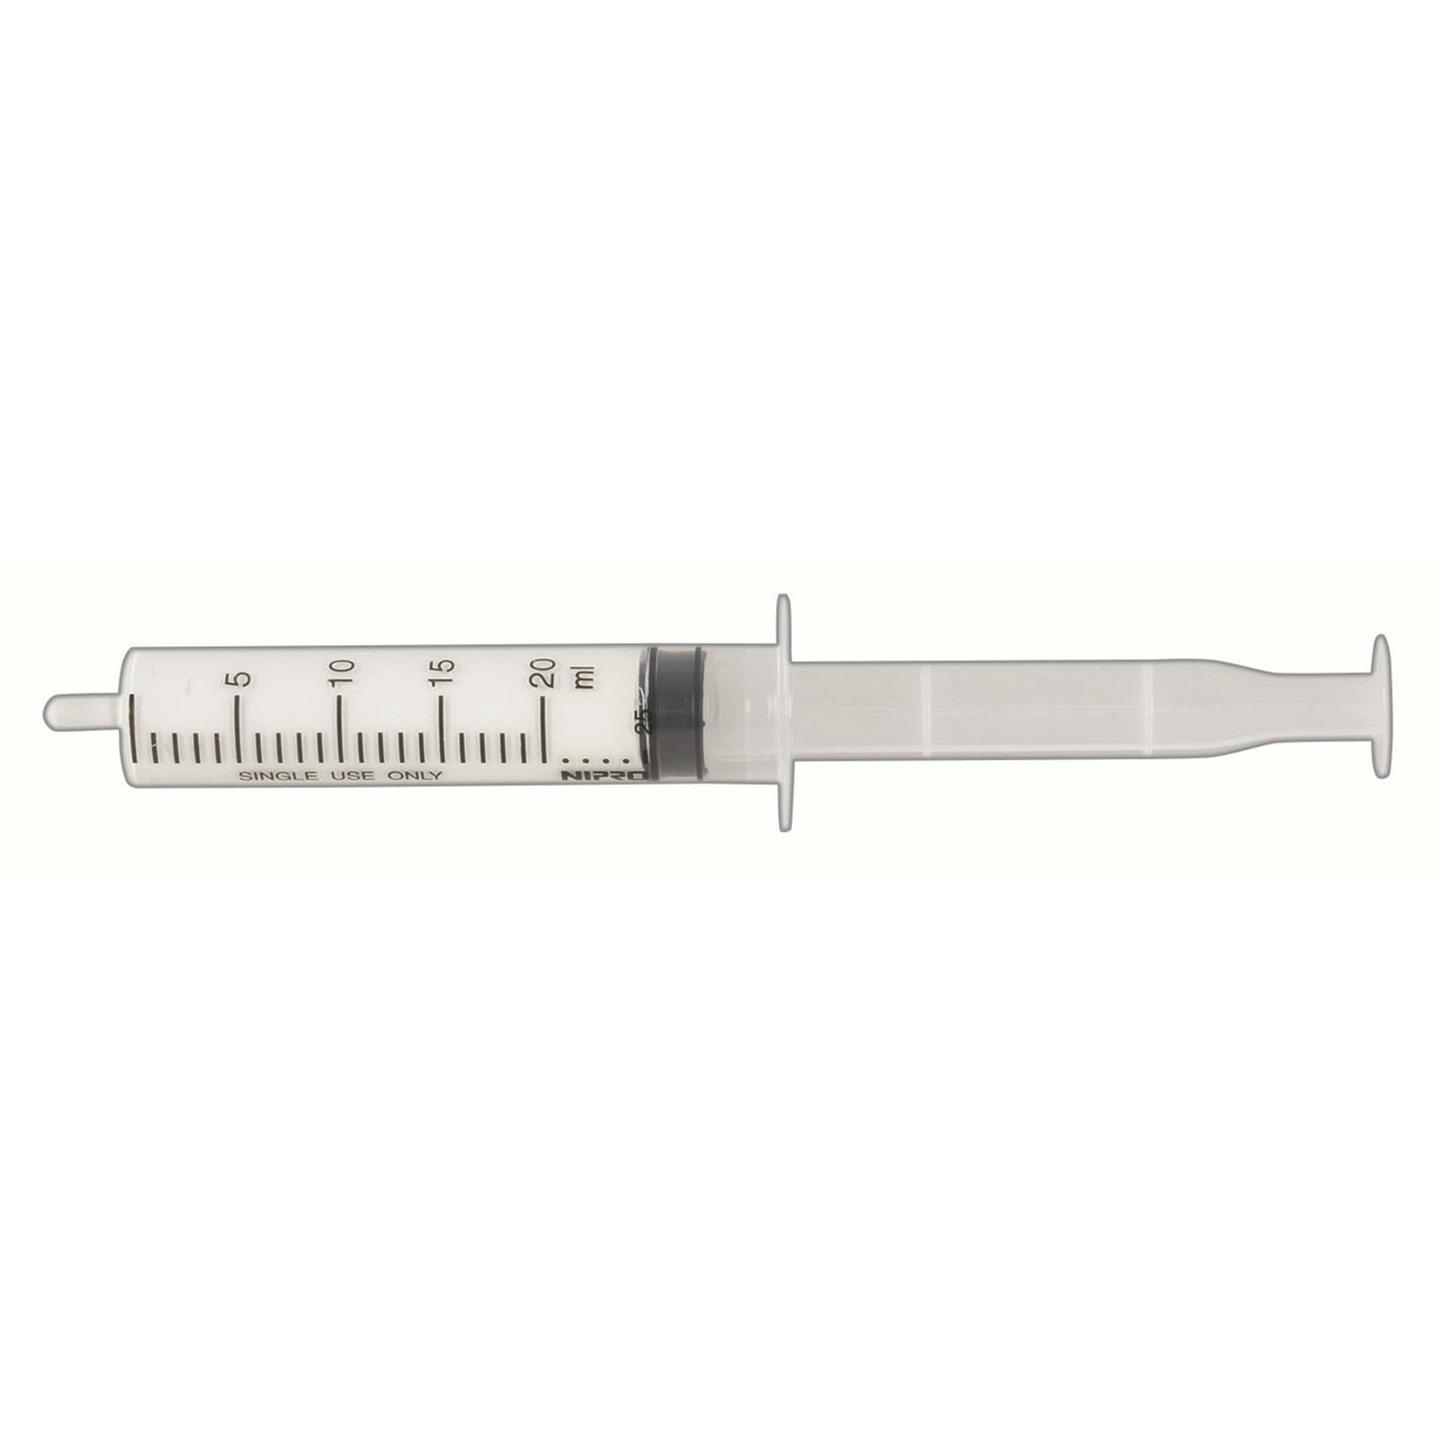 Heatsink Compound - Syringe - 50g